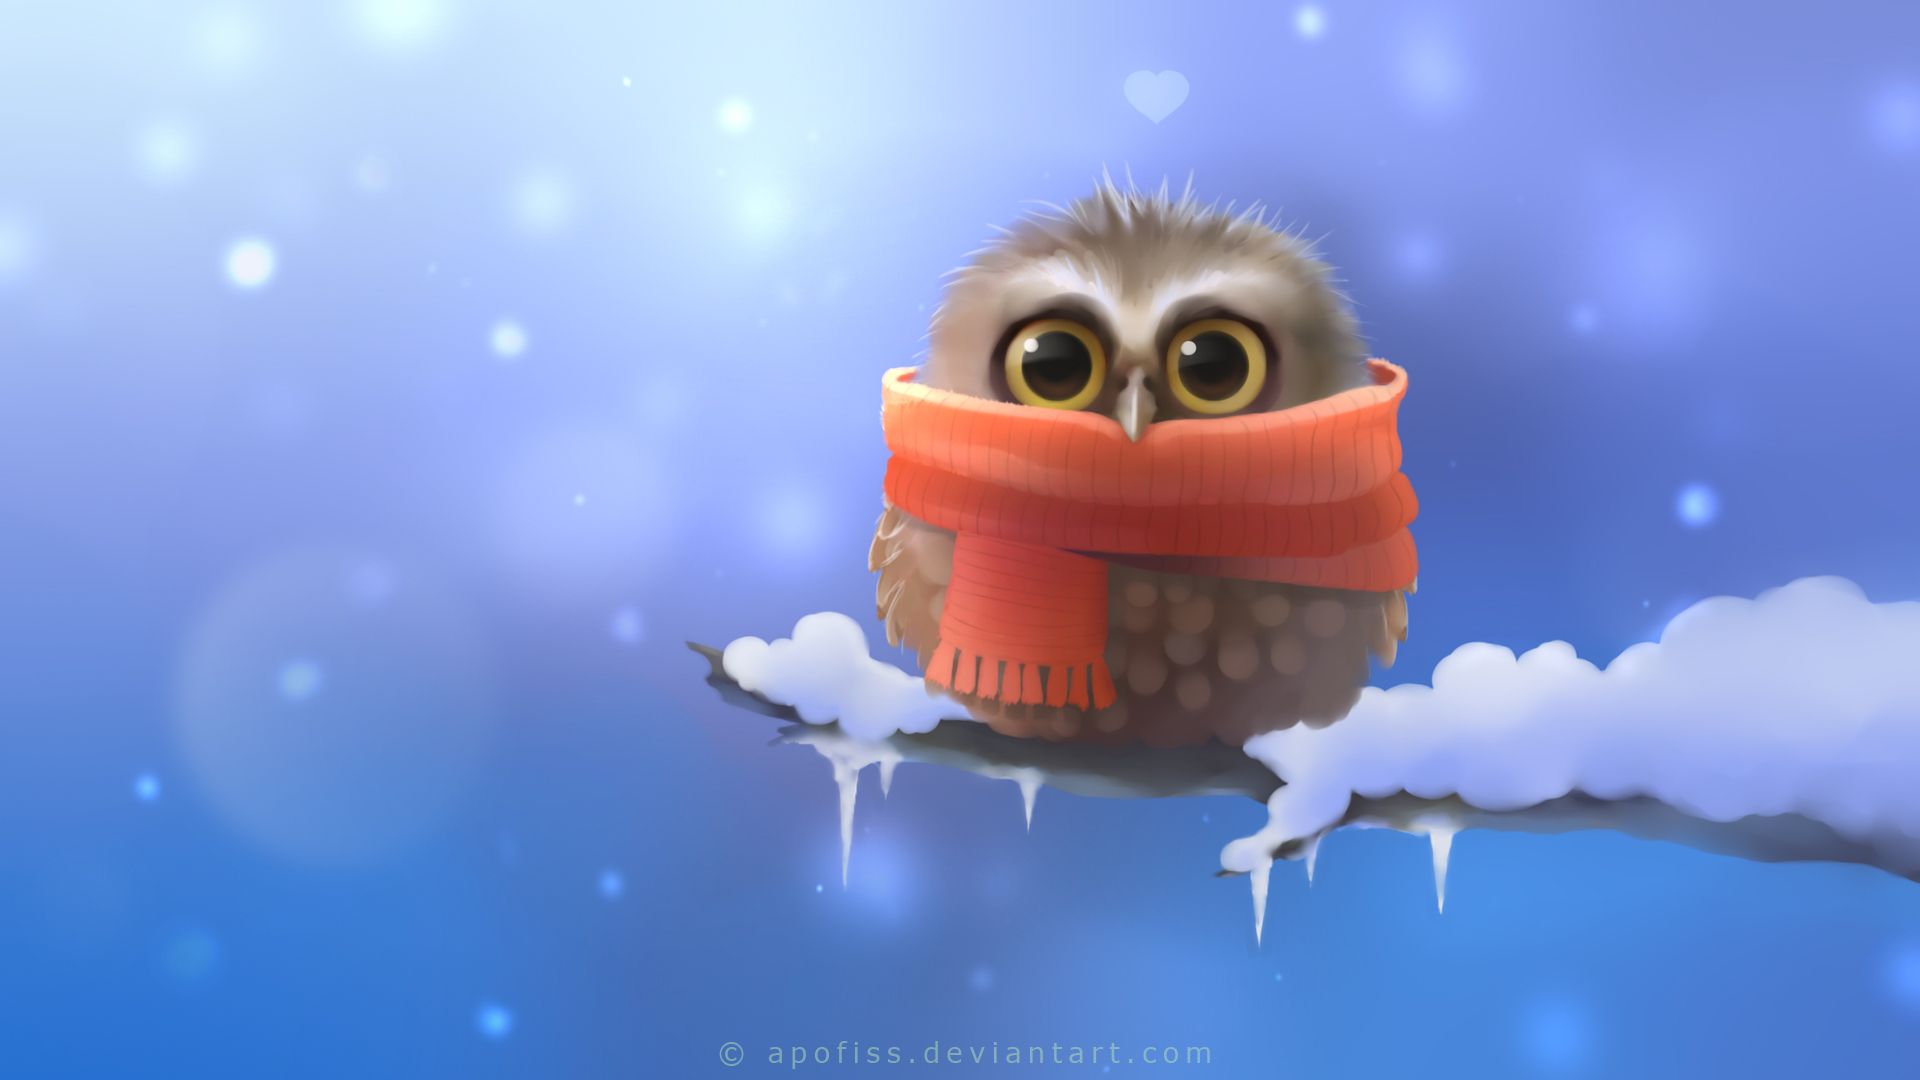 Cute Winter Owl Wallpaper Free Cute Winter Owl Background